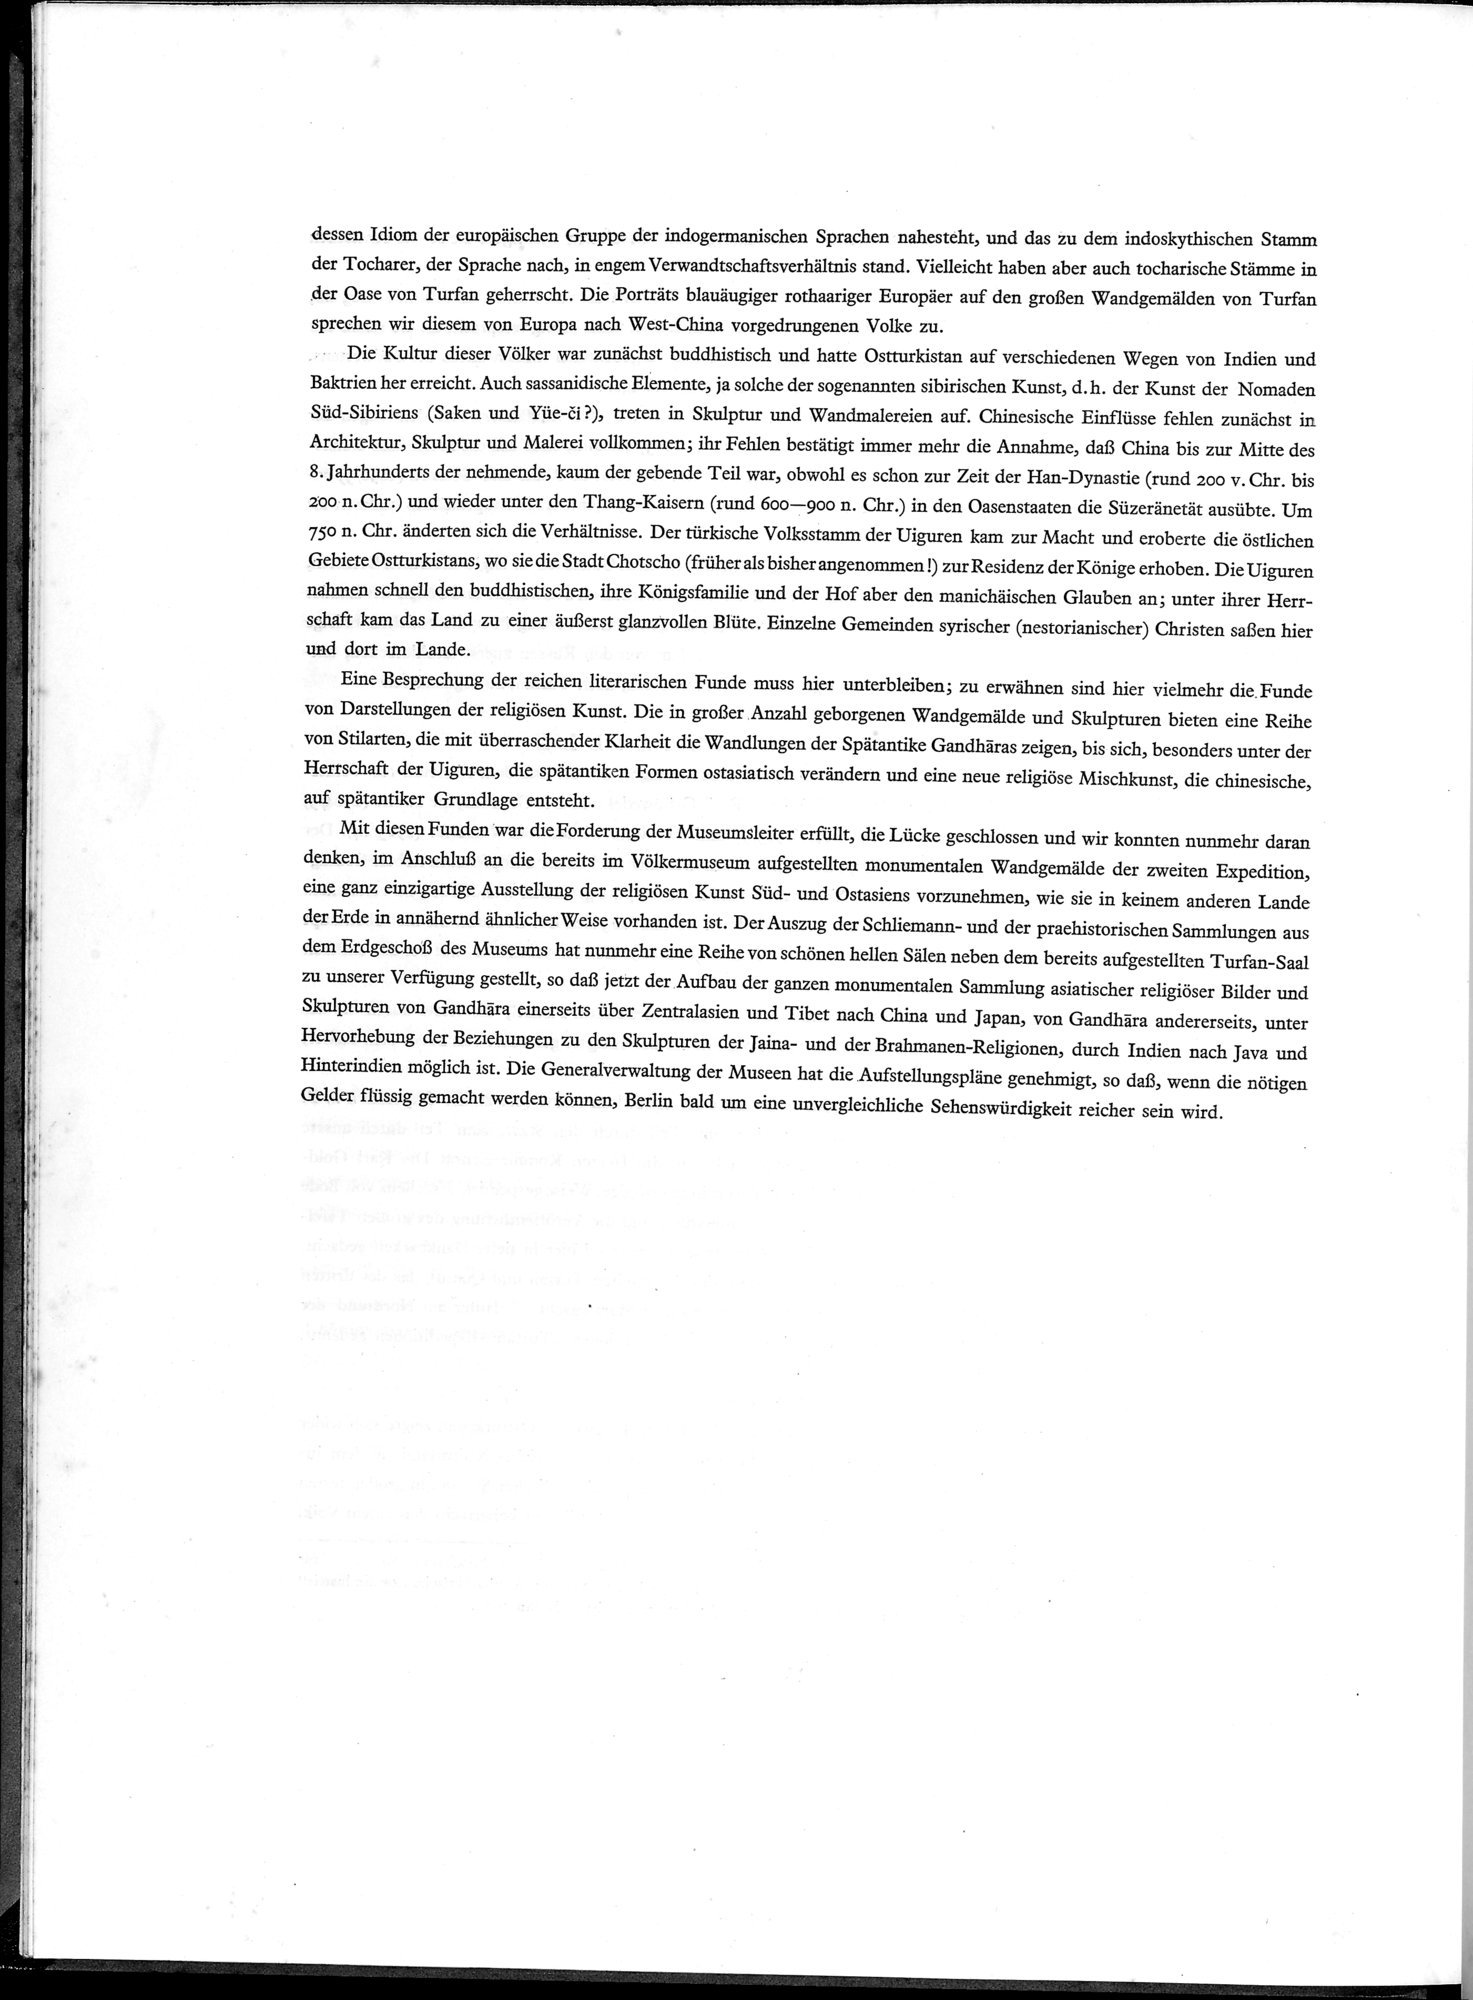 Die Buddhistische Spätantike in Mittelasien : vol.1 / Page 20 (Grayscale High Resolution Image)